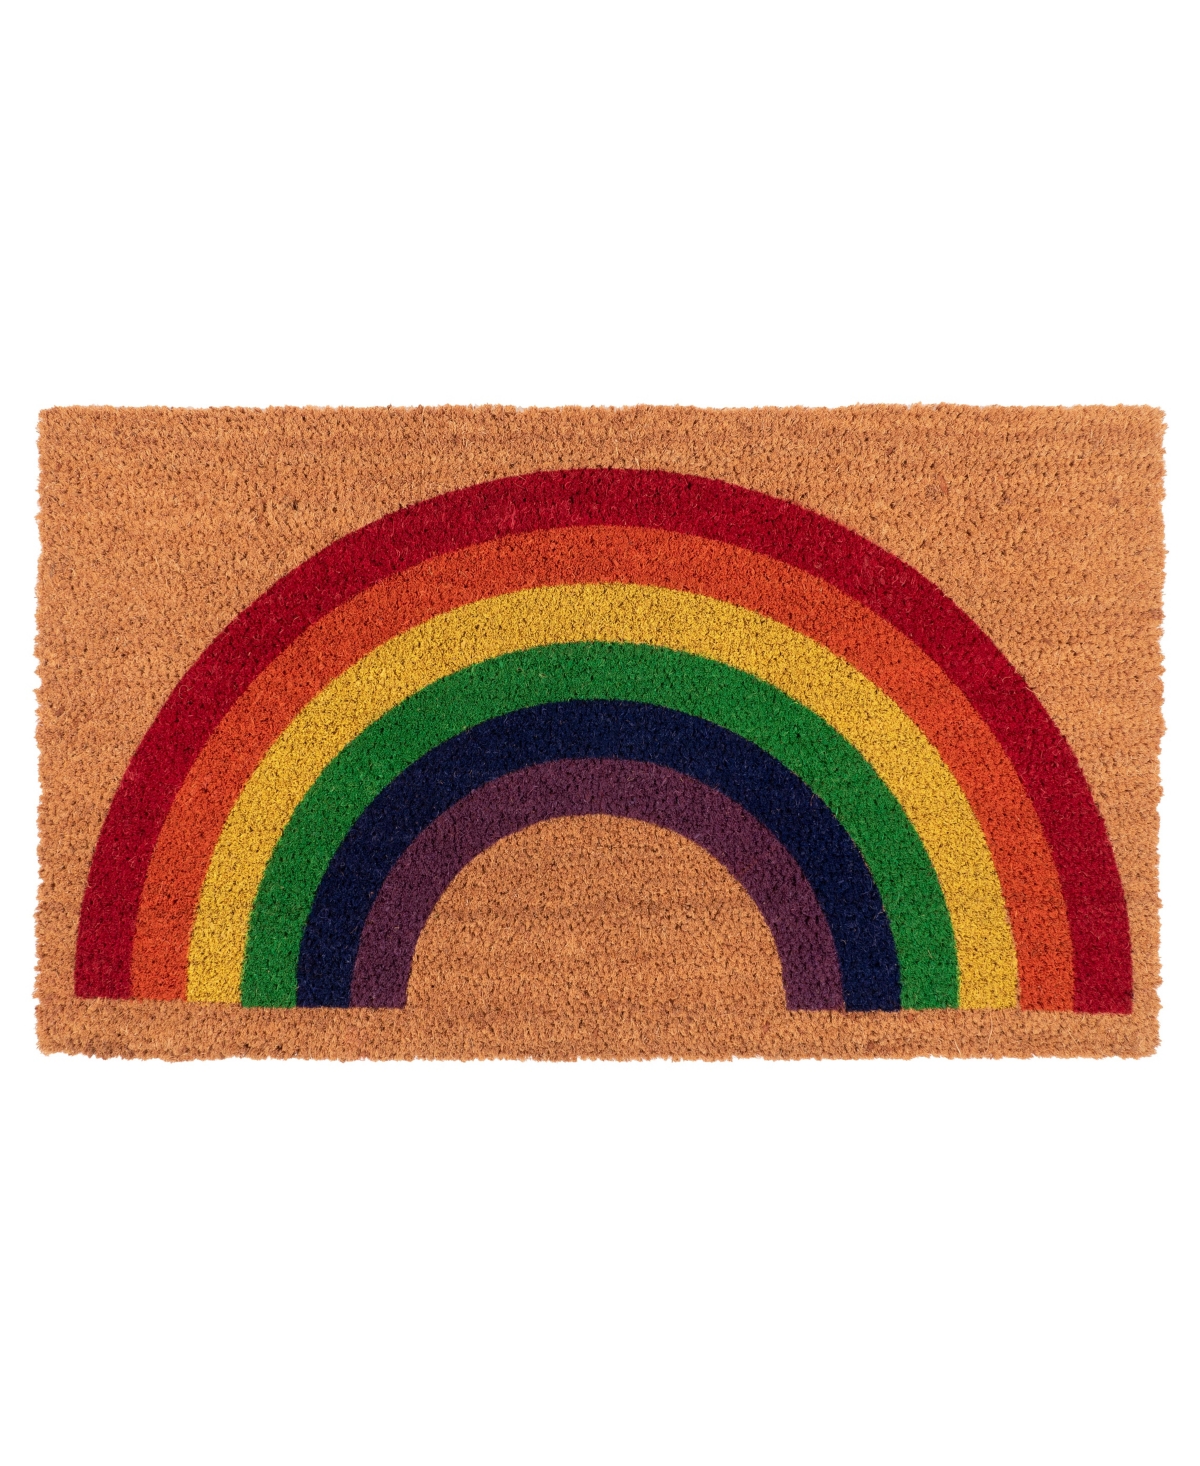 Coir Doormat, Rainbow - Beige